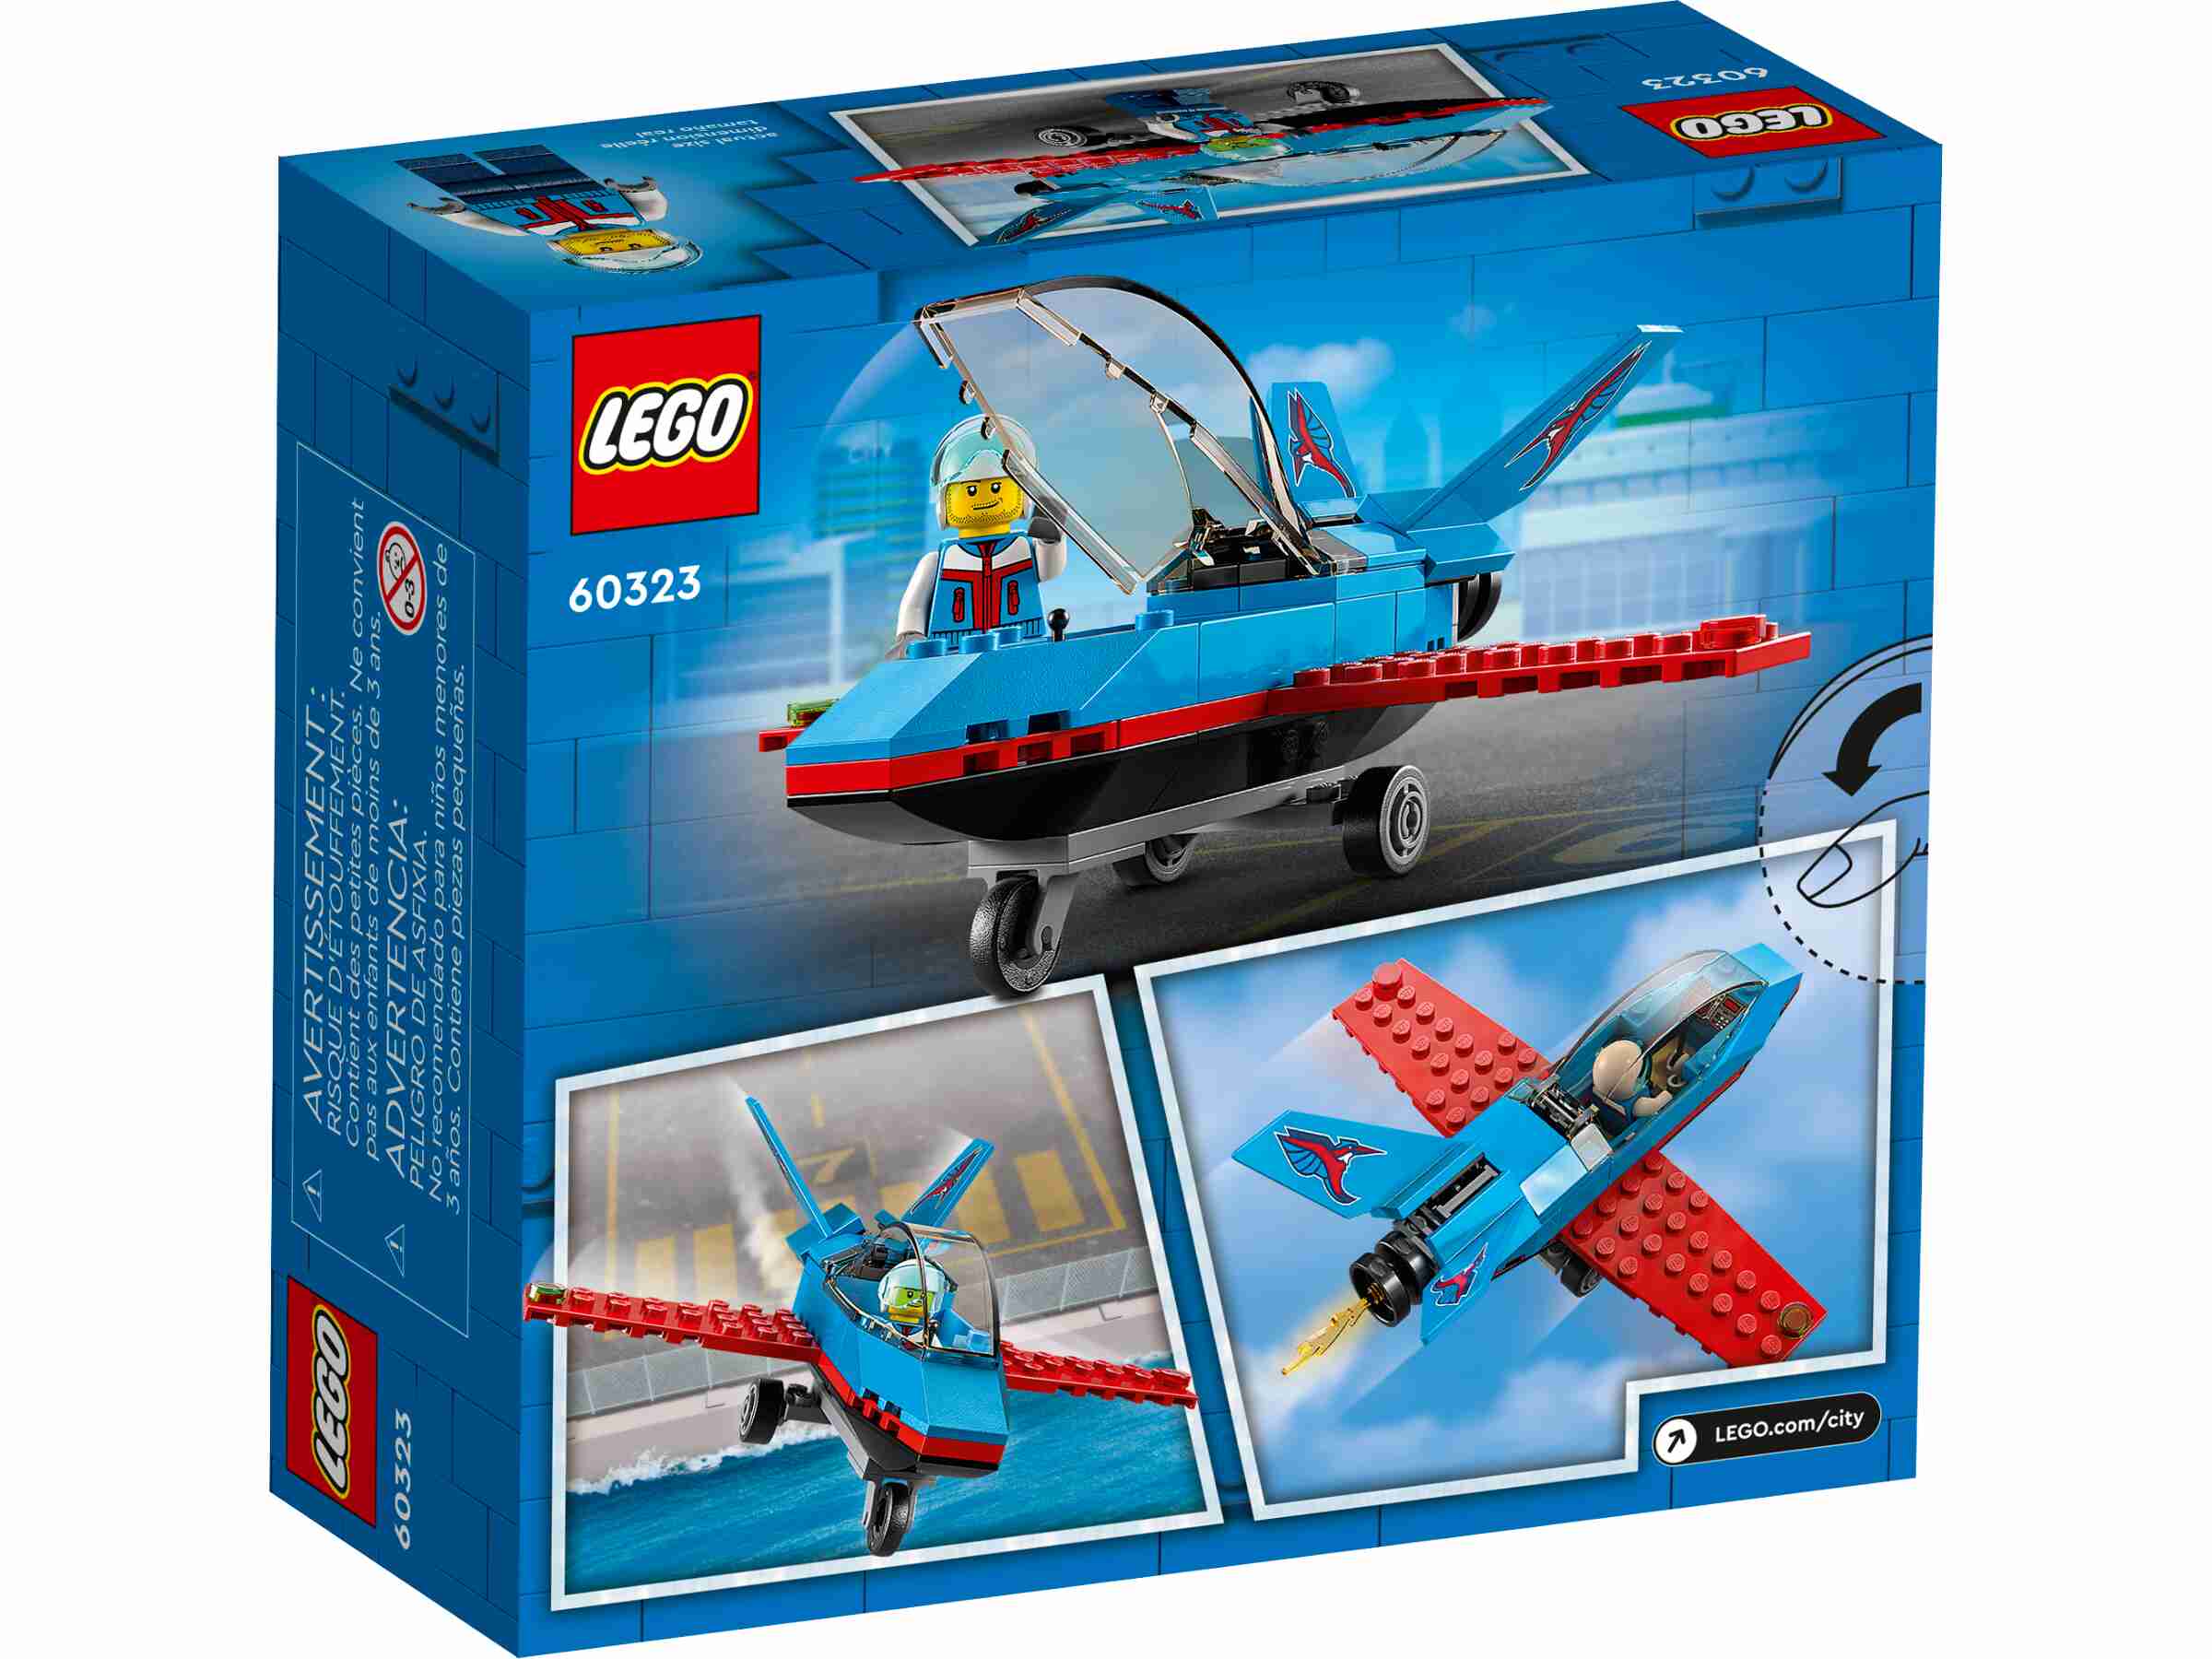 LEGO 60323 City Stuntflugzeug, Kunstflugzeug, Flugzeug mit 1 Piloten-Minifigur